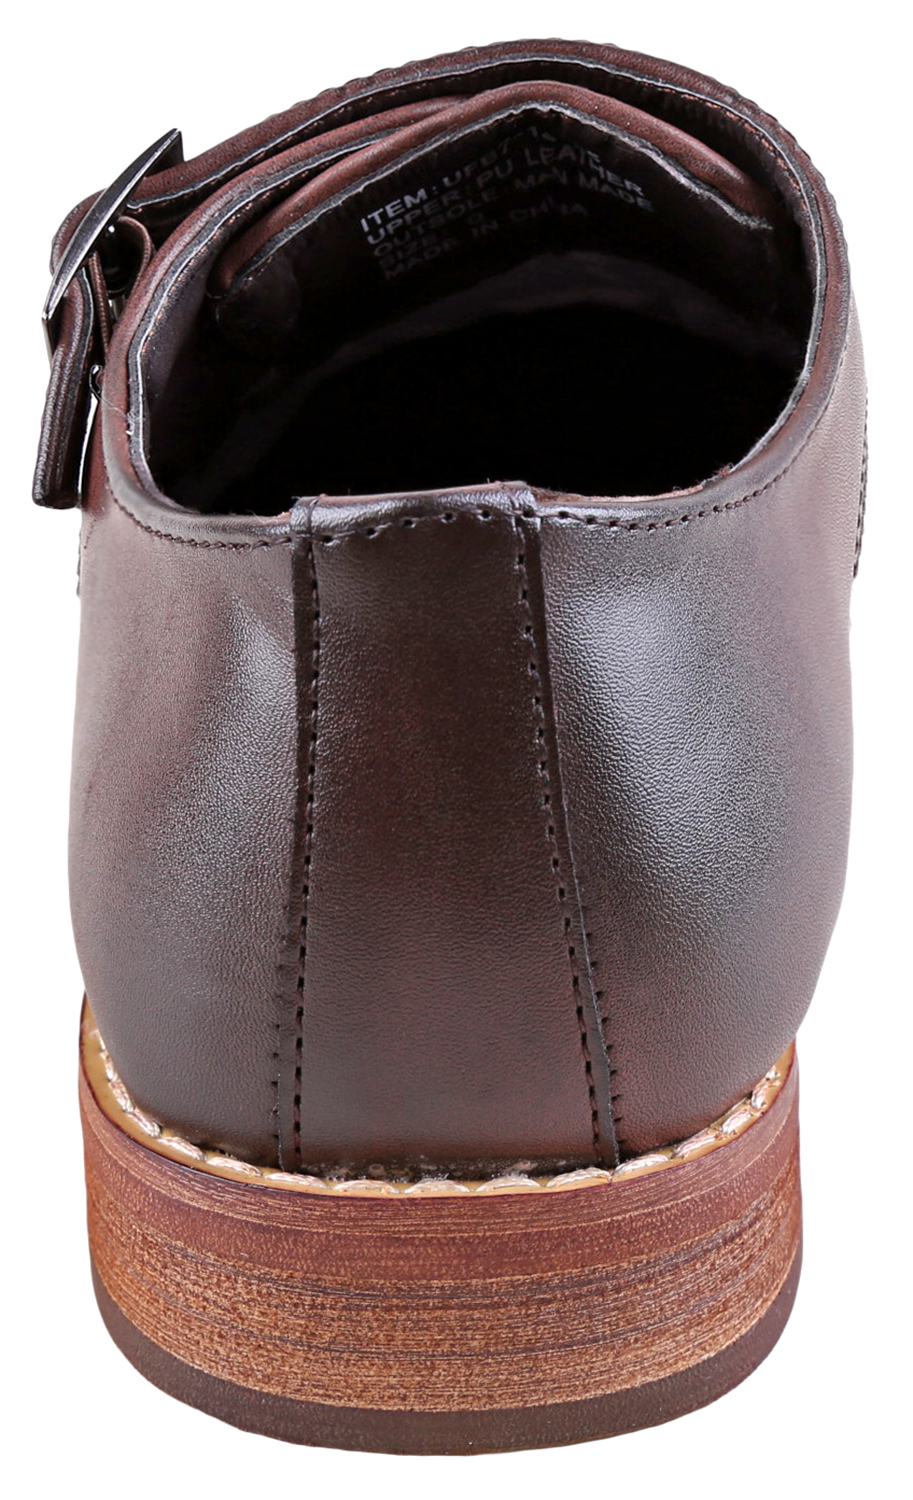 Urban Fox Allen Men's Dress Shoe | Double Monk Strap | Brogue | Wingtip Shoes for Men | Dark Brown 9 M US - image 4 of 7